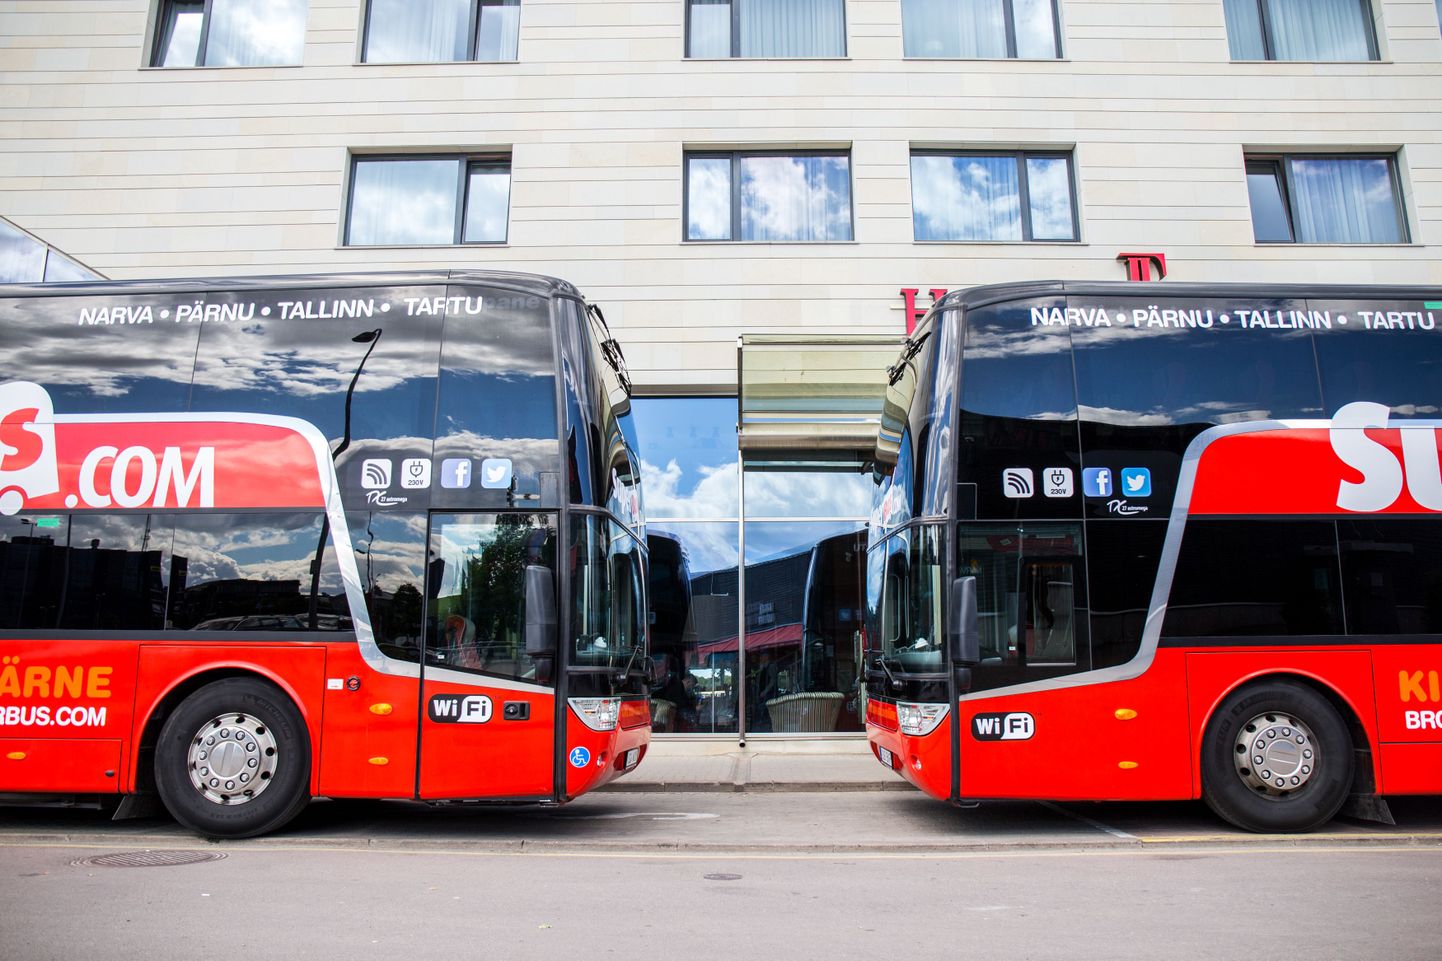 Selle aasta esimesel oktoobril avab Superbus uue bussiliini Tallinna ja Poola vahel.